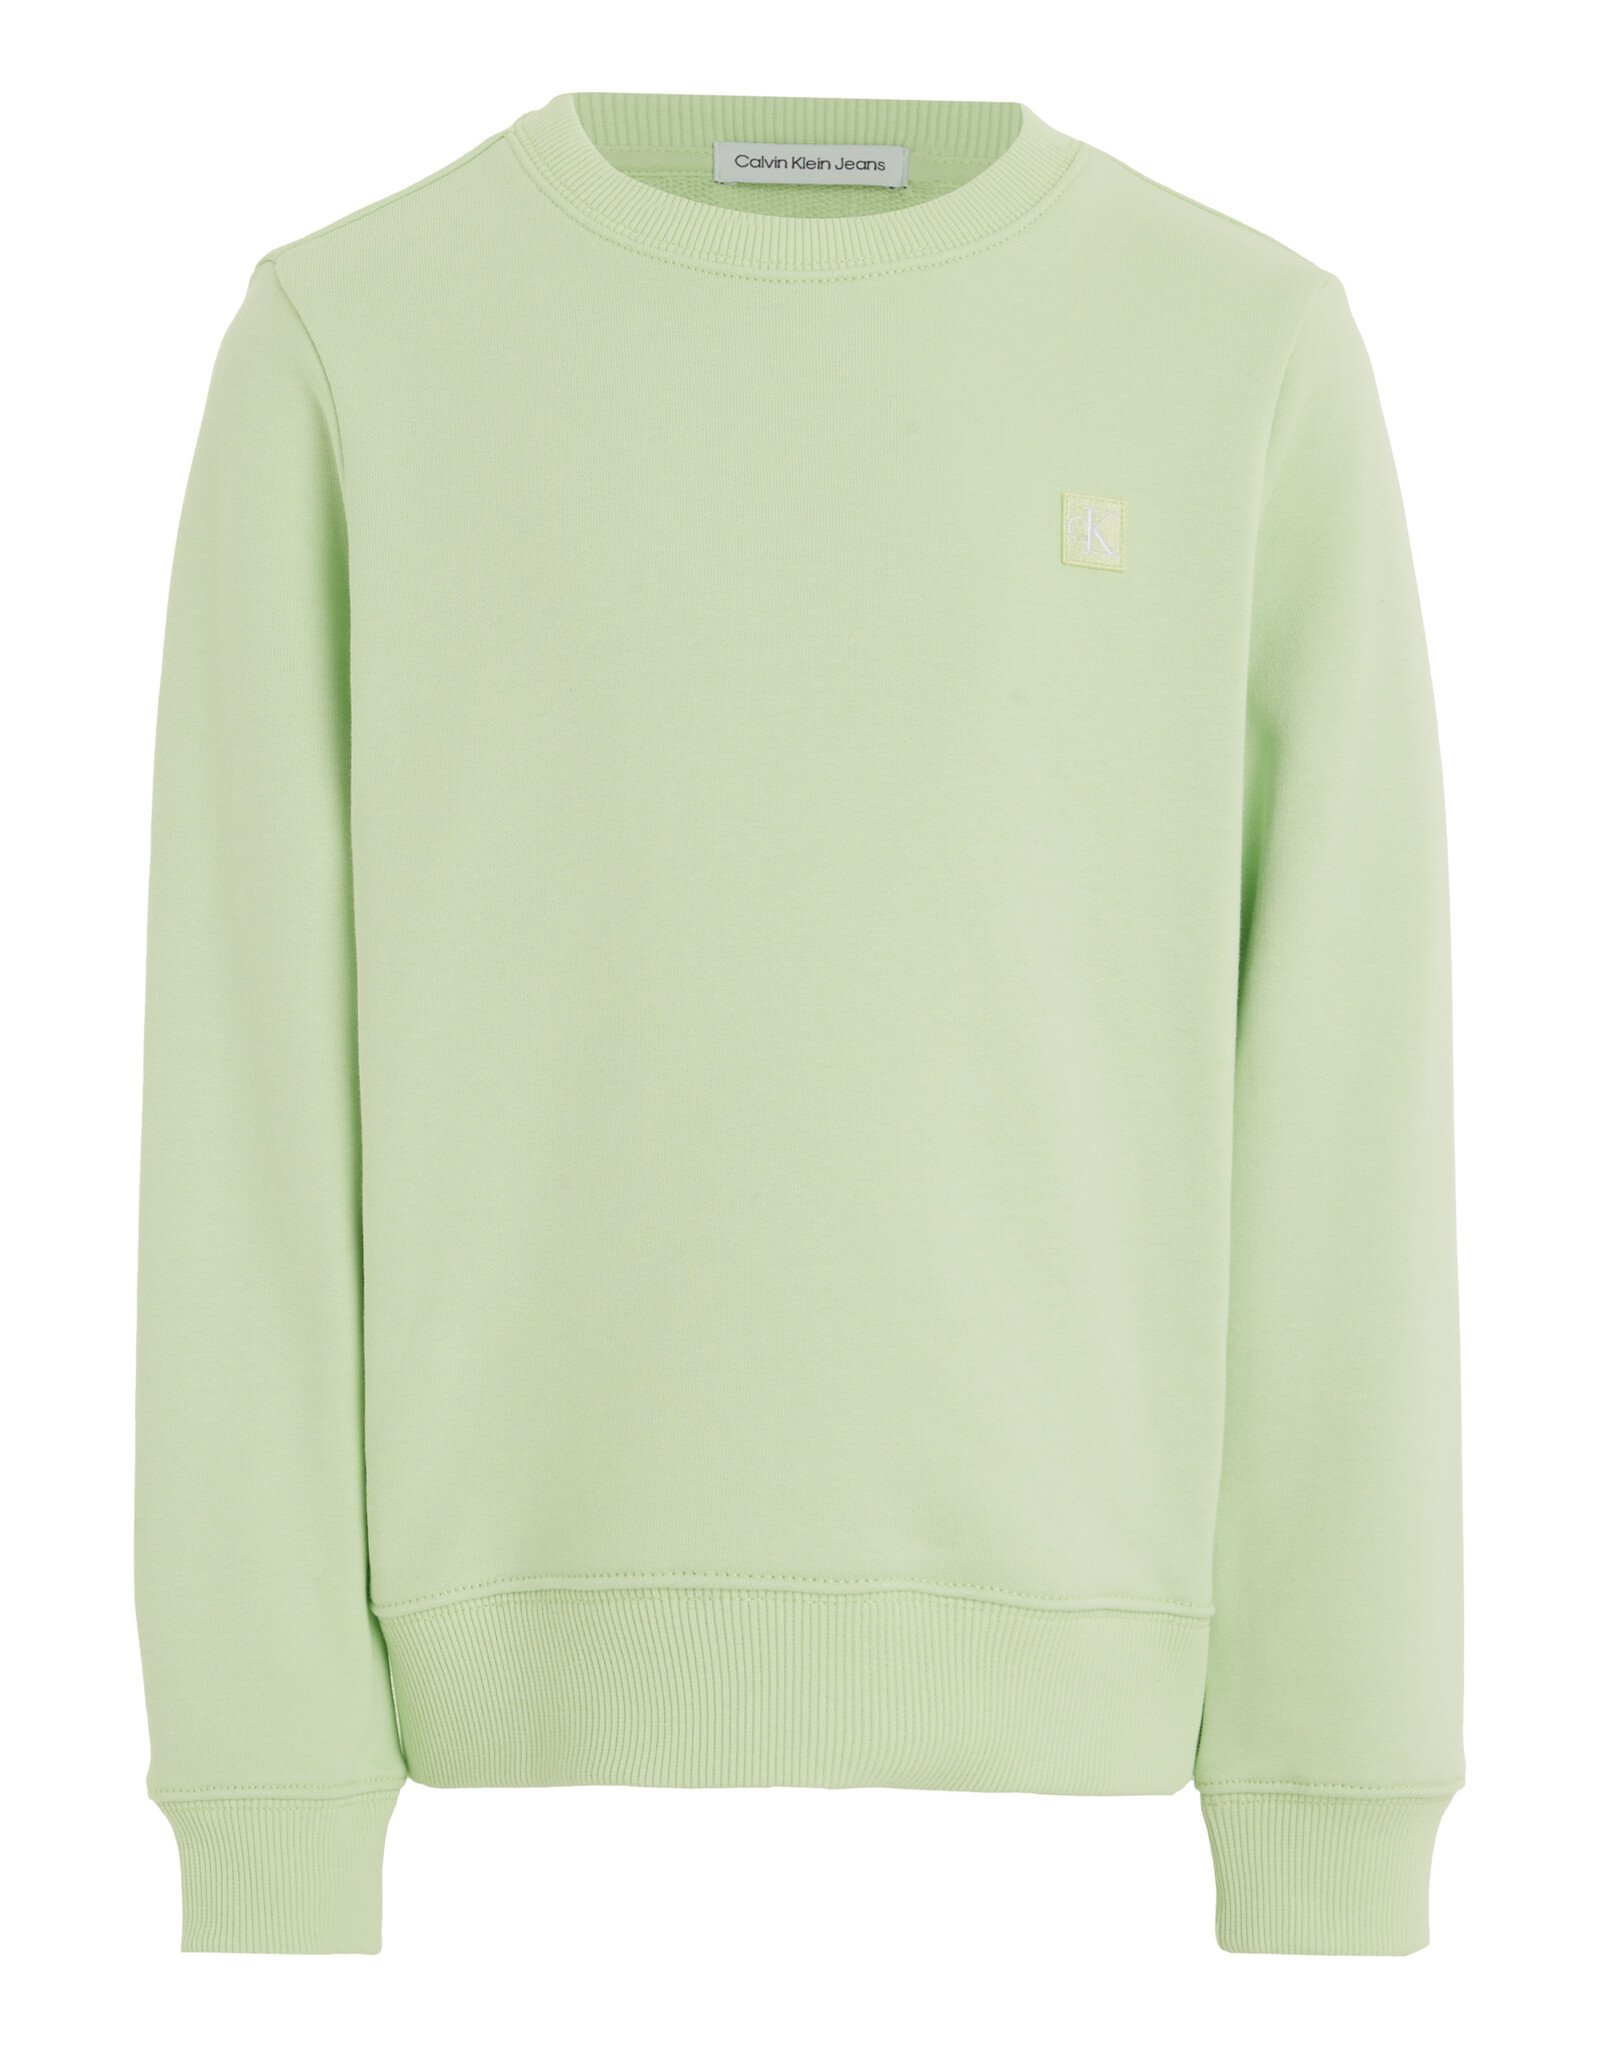 Calvin Klein Sweater IU0IU00570LT6 - lichtgroen/mint